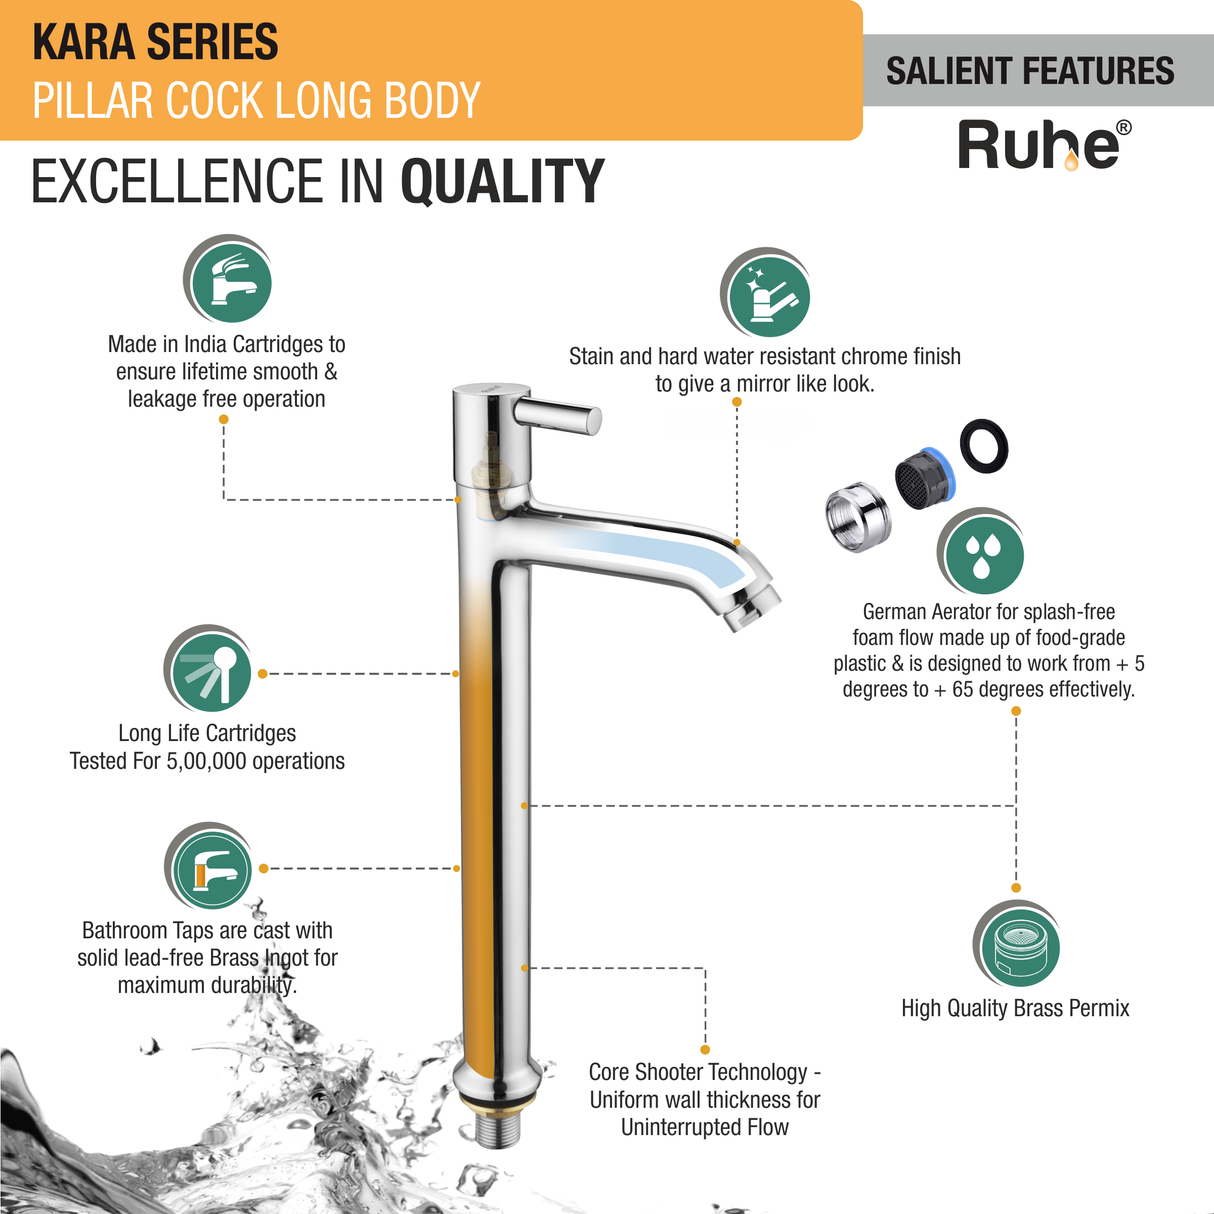 Kara Pillar Tap Tall Body Brass Faucet features